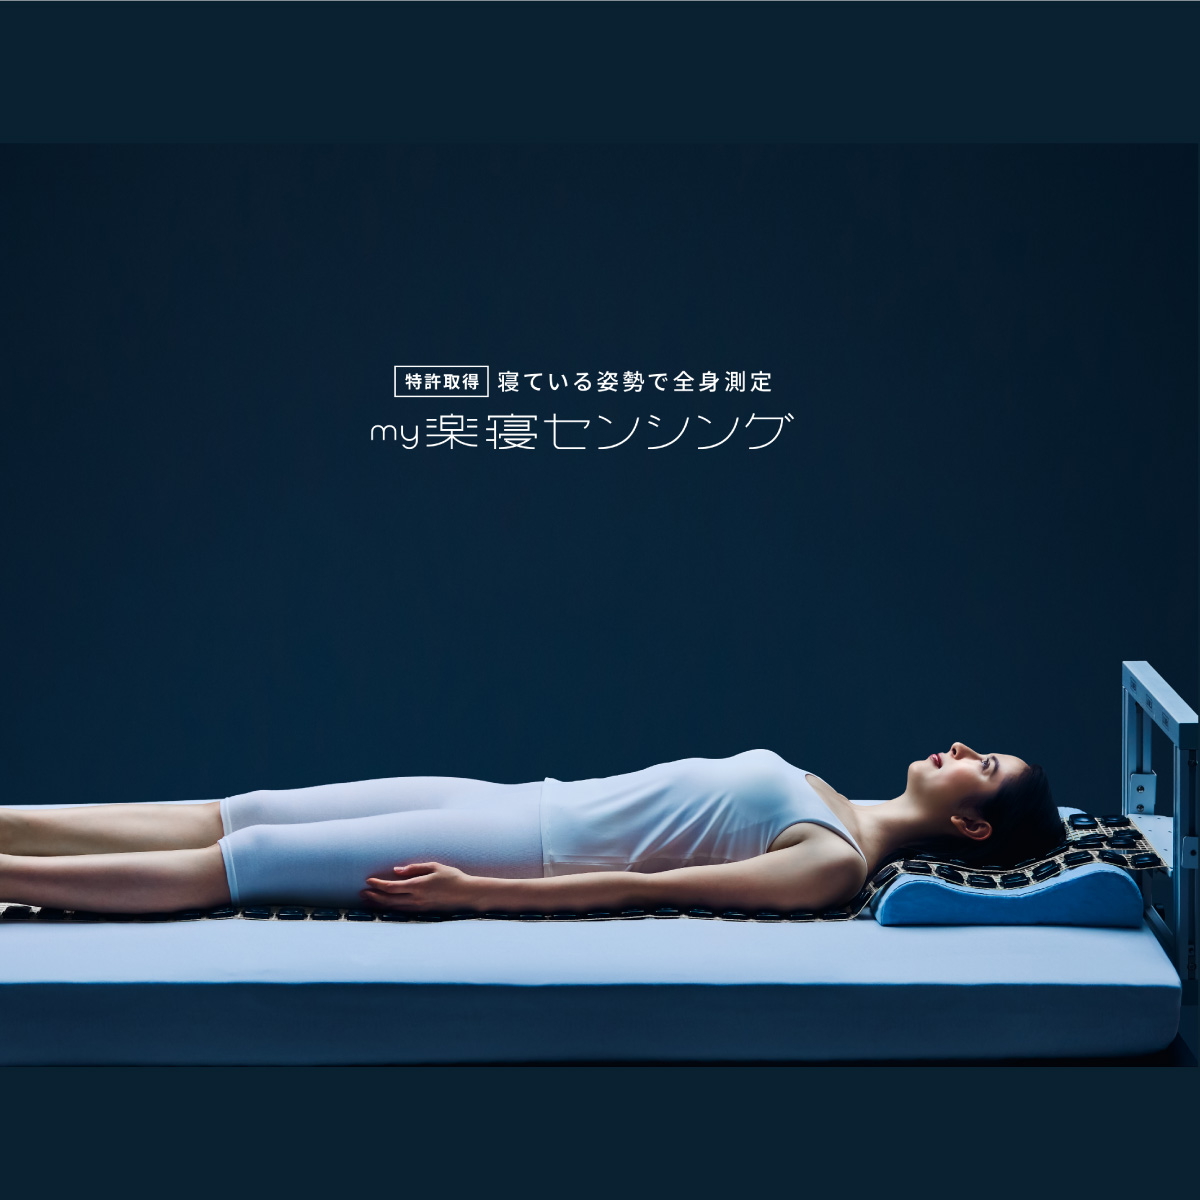 mybed28-マイ枕全身測定機で蓄積した様々な寝姿勢データを分析して開発されたマットレス。